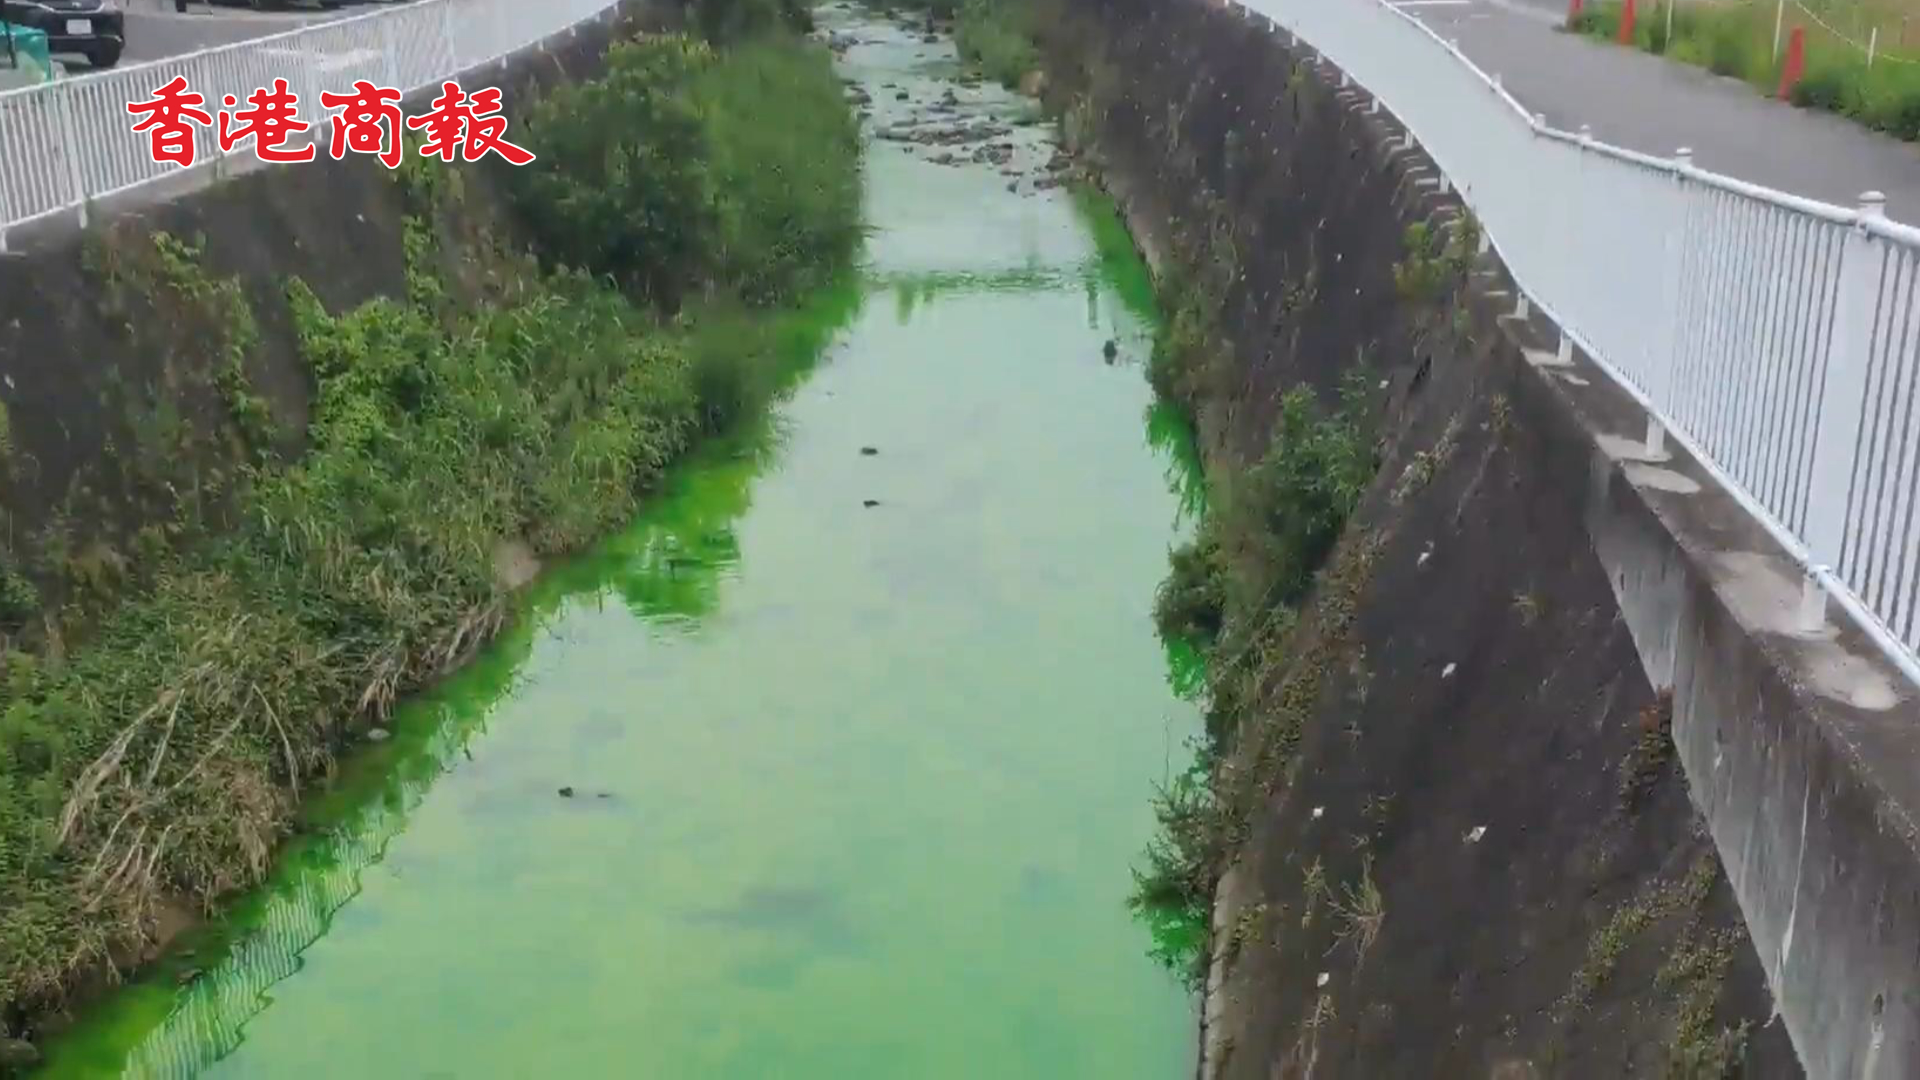 有片 | 檢測出入浴劑成分  日本一條河變成熒光綠色